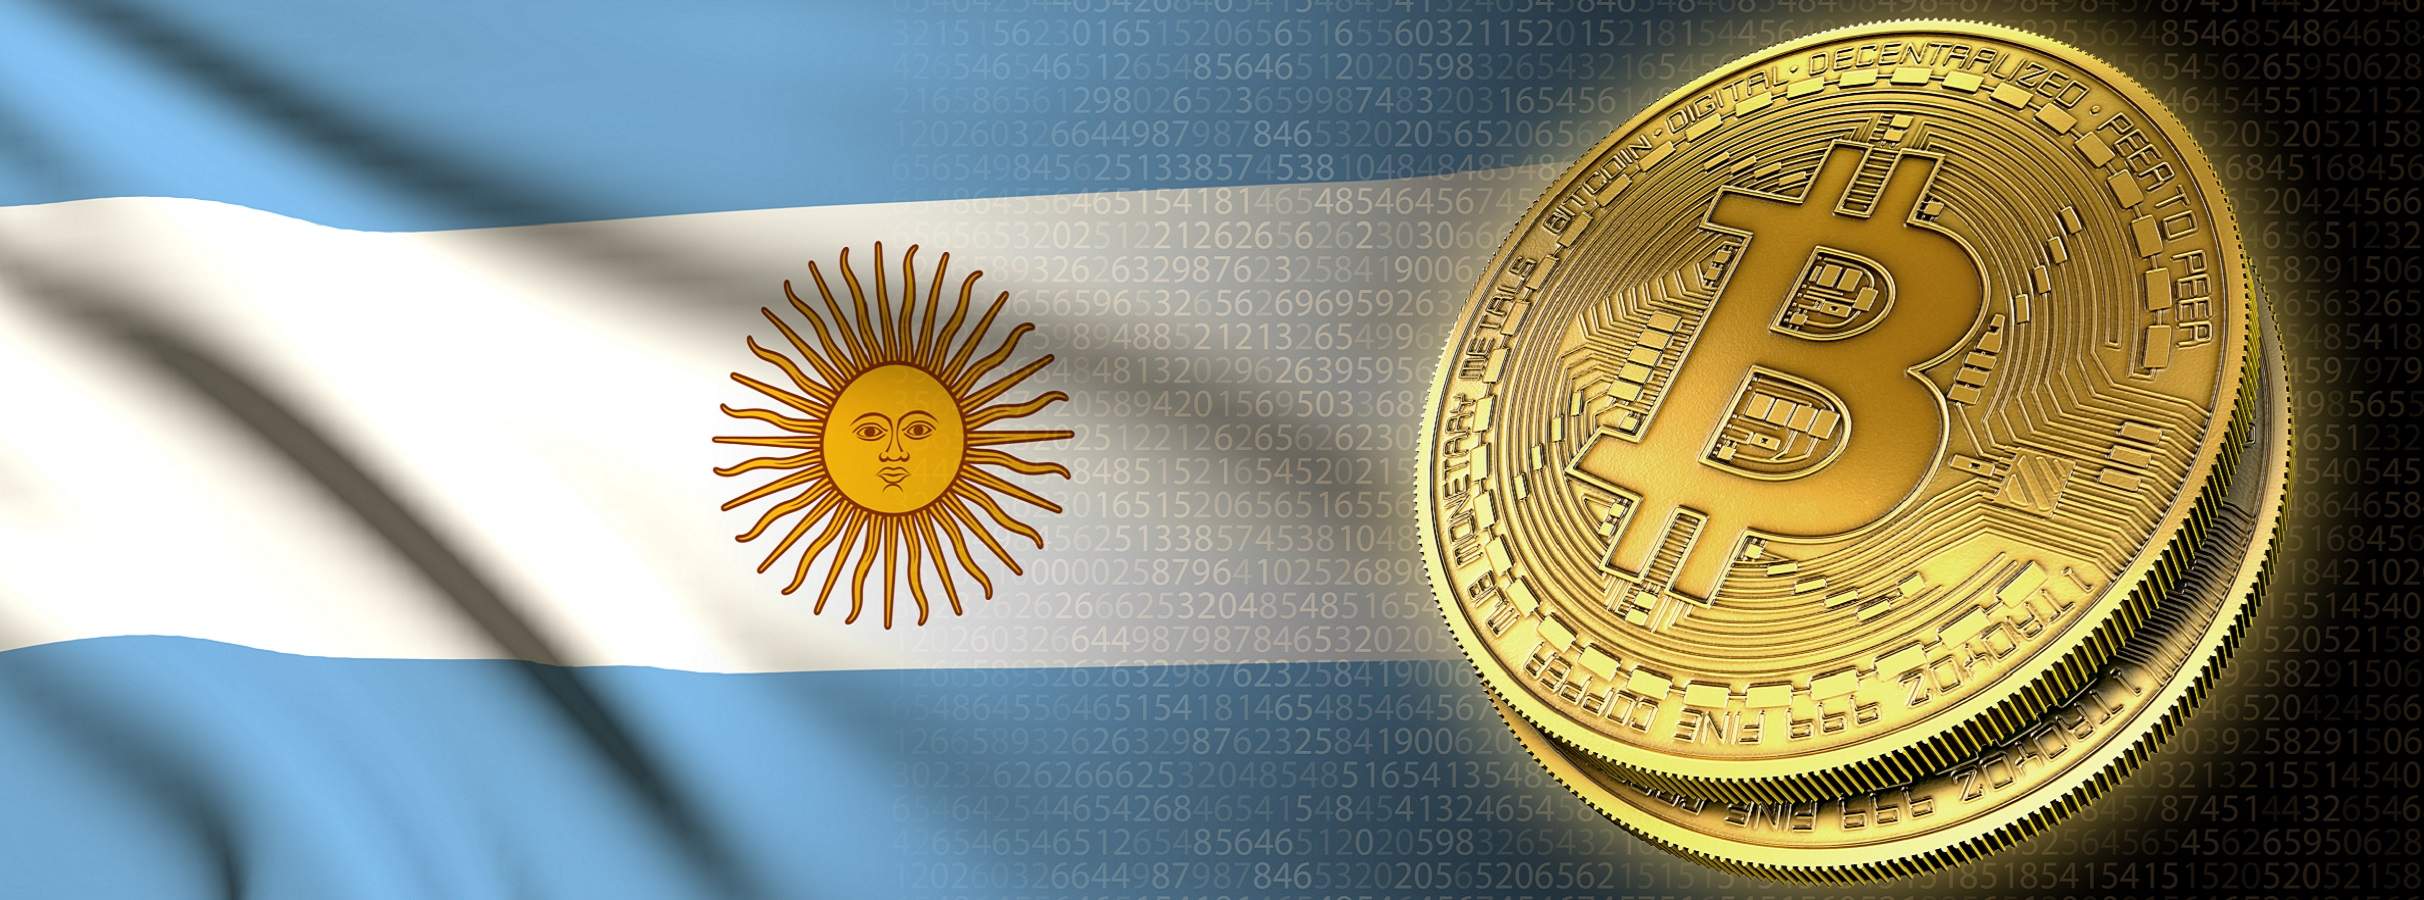 Peso argentino desvaloriza e buscas por bitcoin aumentam